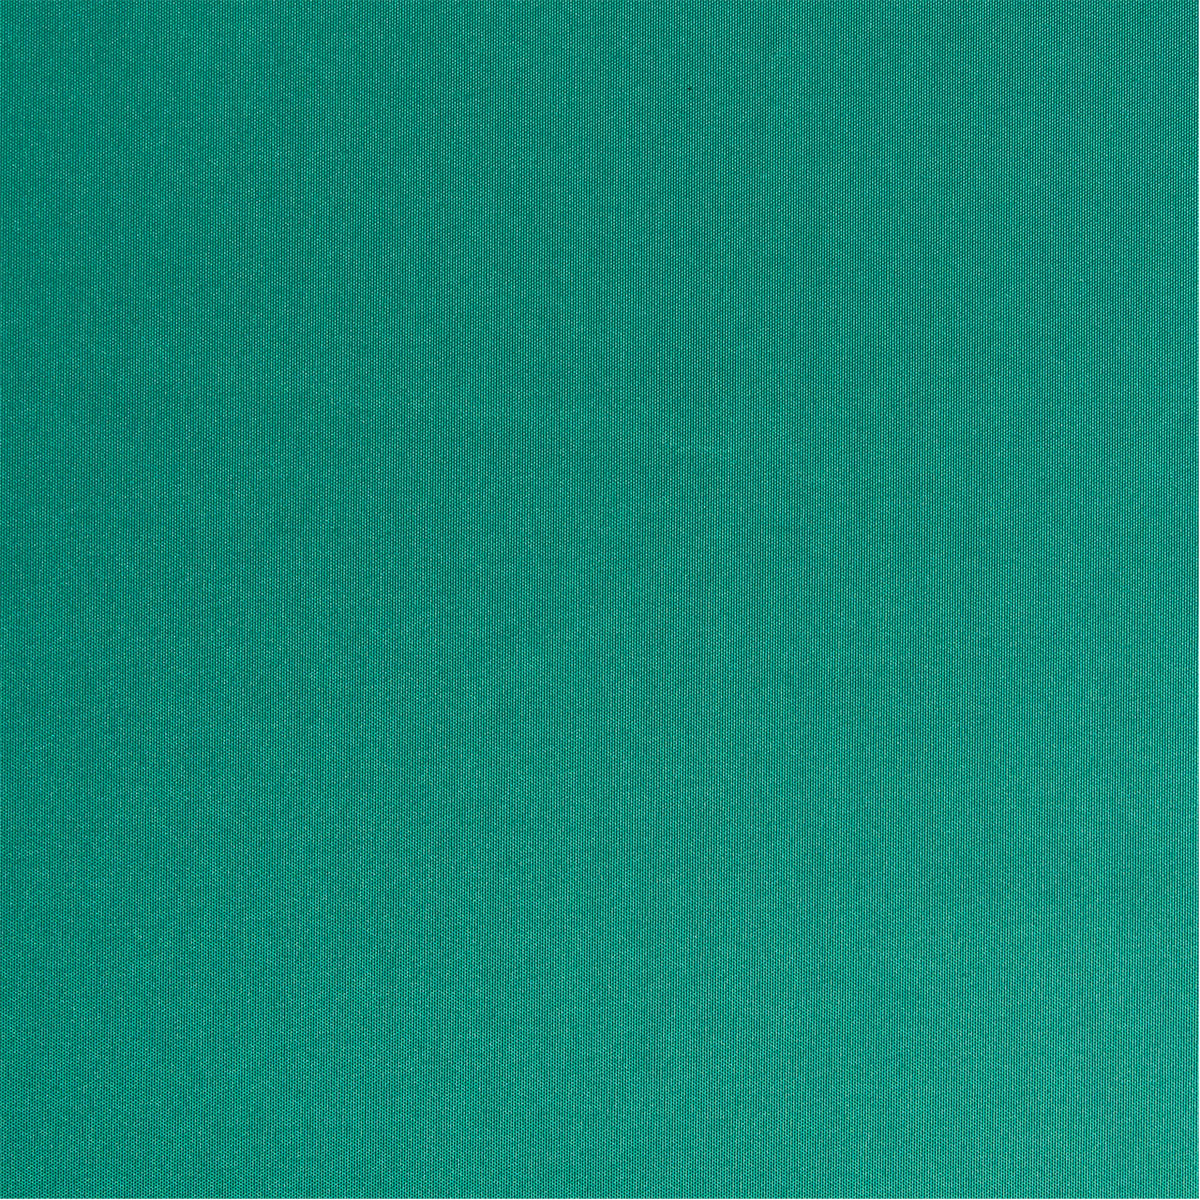 Outdoor-Stoff hellgrün uni in 1,6m Breite (METERWARE) Markisenstoff aus 100% Polyester